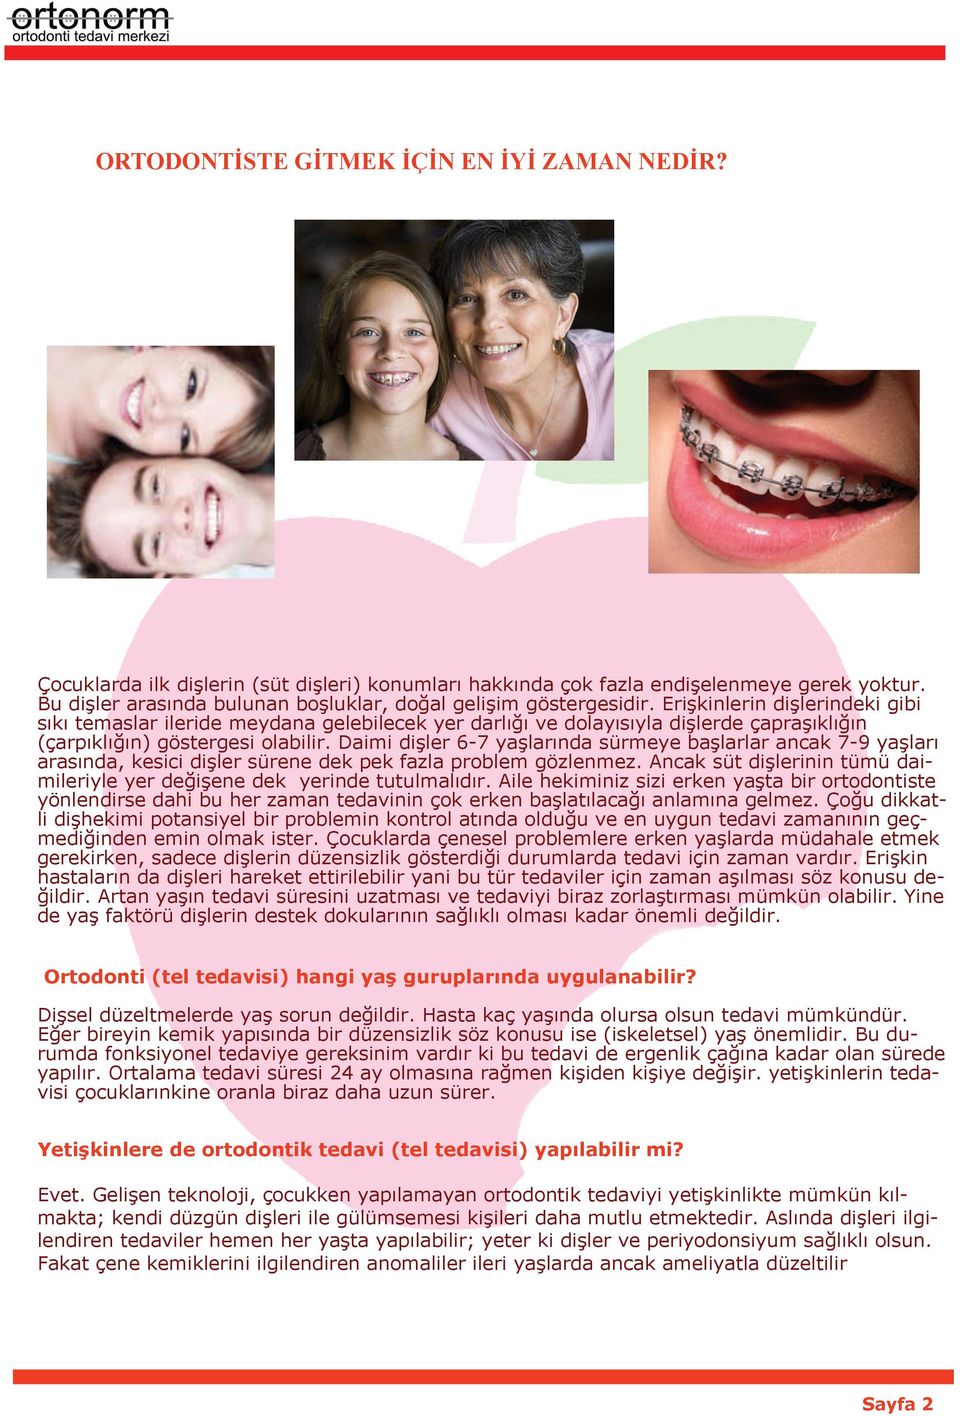 Erişkinlerin dişlerindeki gibi sıkı temaslar ileride meydana gelebilecek yer darlığı ve dolayısıyla dişlerde çapraşıklığın (çarpıklığın) göstergesi olabilir.